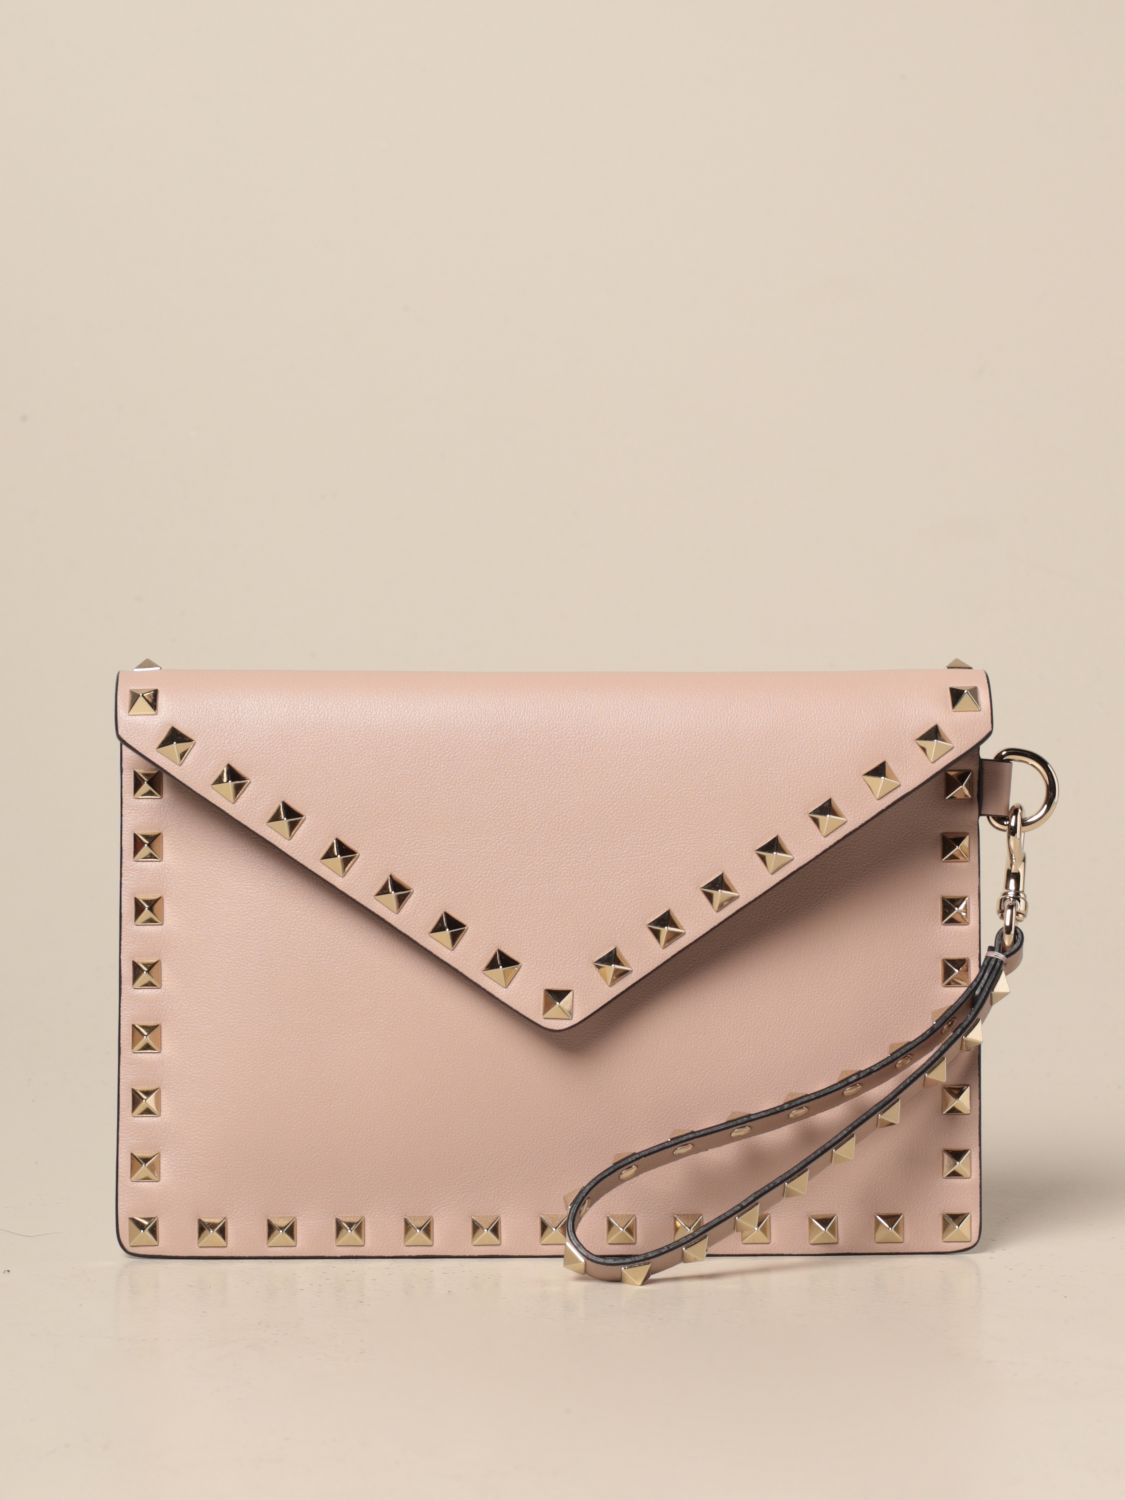 Valentino Garavani Pink Rockstud Large Leather Envelope Clutch Bag In Rosa